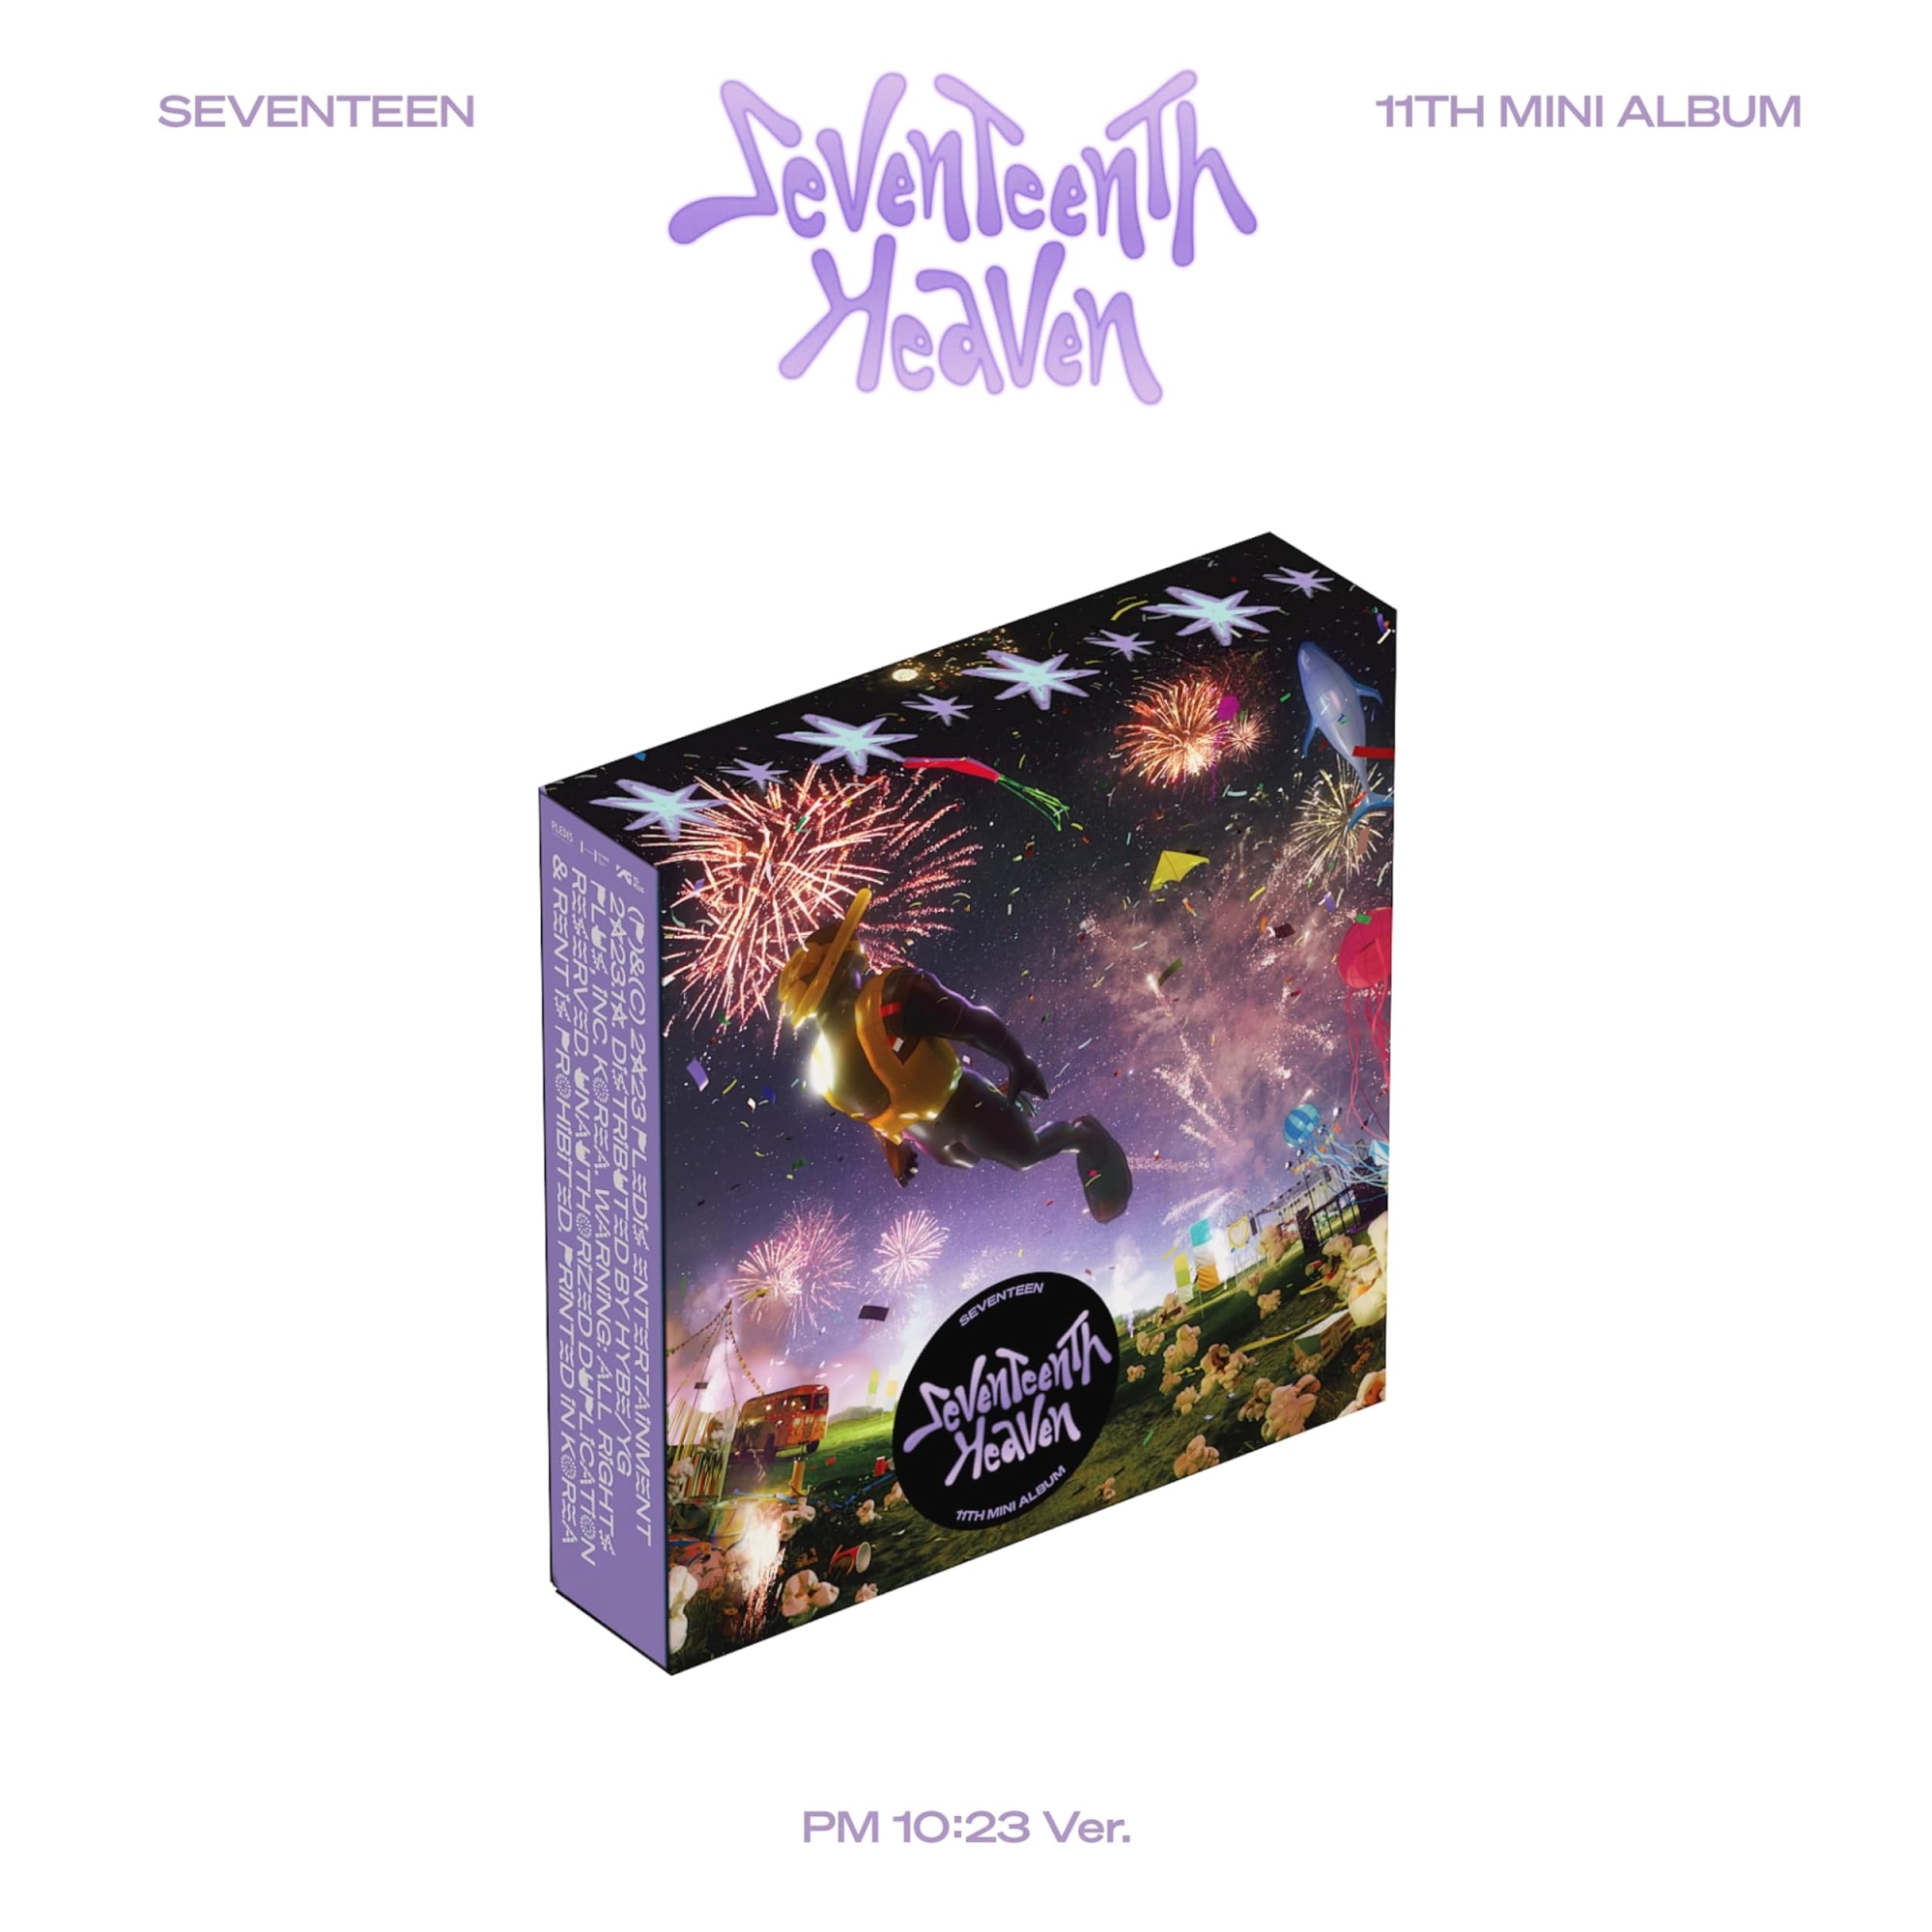 Audio Cd Seventeen - 11Th Mini Album 'Seventeenth Heaven' Pm 10:23 Ver NUOVO SIGILLATO, EDIZIONE DEL 27/10/2023 SUBITO DISPONIBILE